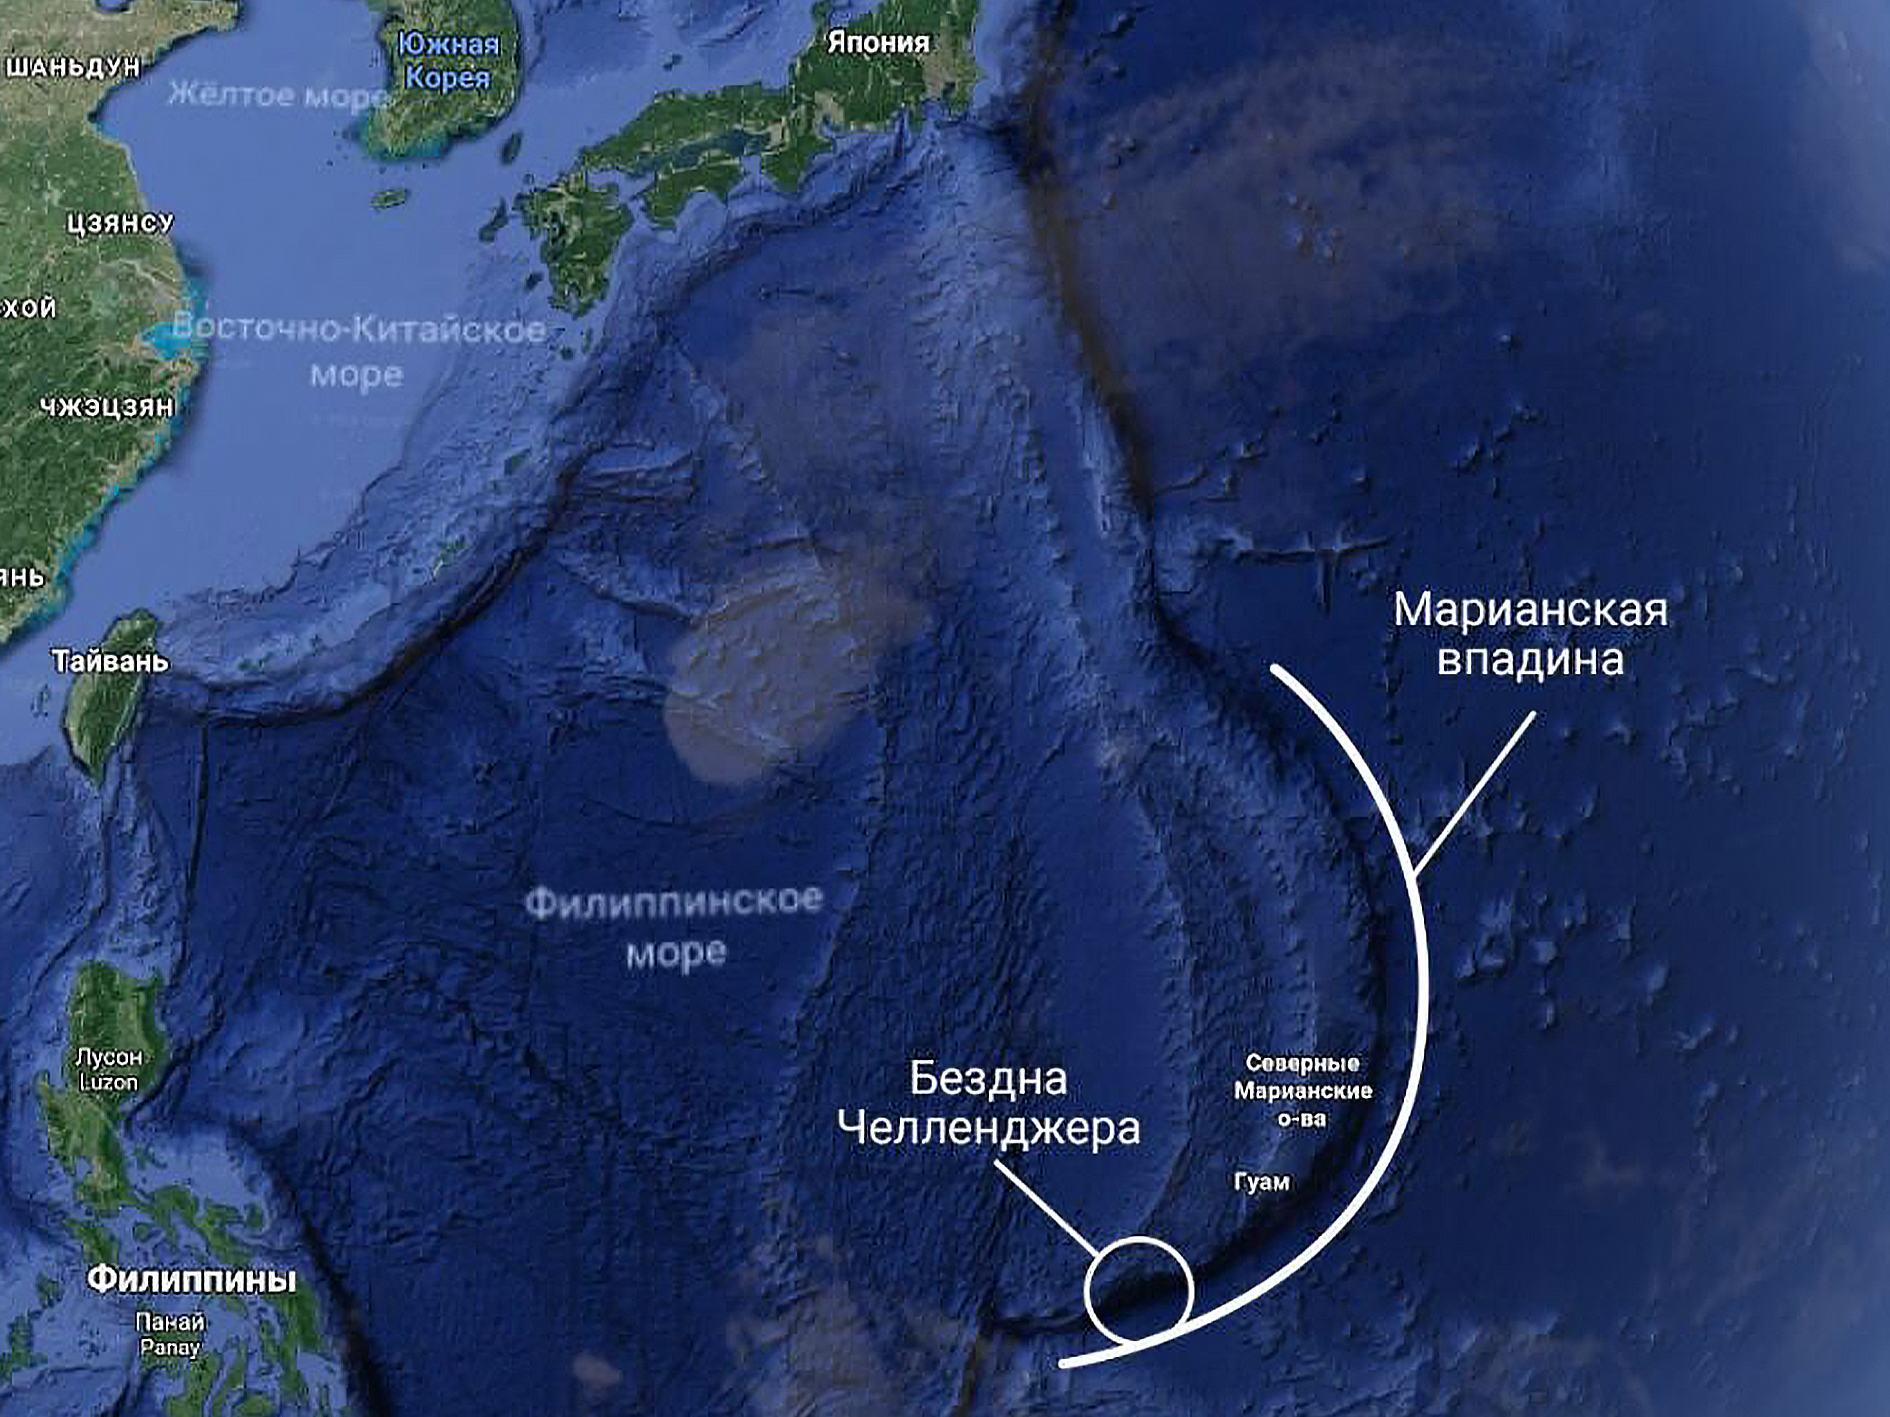 Название островов расположенных в тихом океане. Марианский жёлоб на карте Тихого океана. Марианский жёлоб глубина на карте. Марианская впадина на карте Тихого океана глубина. Марианская впадина глубина на карте.